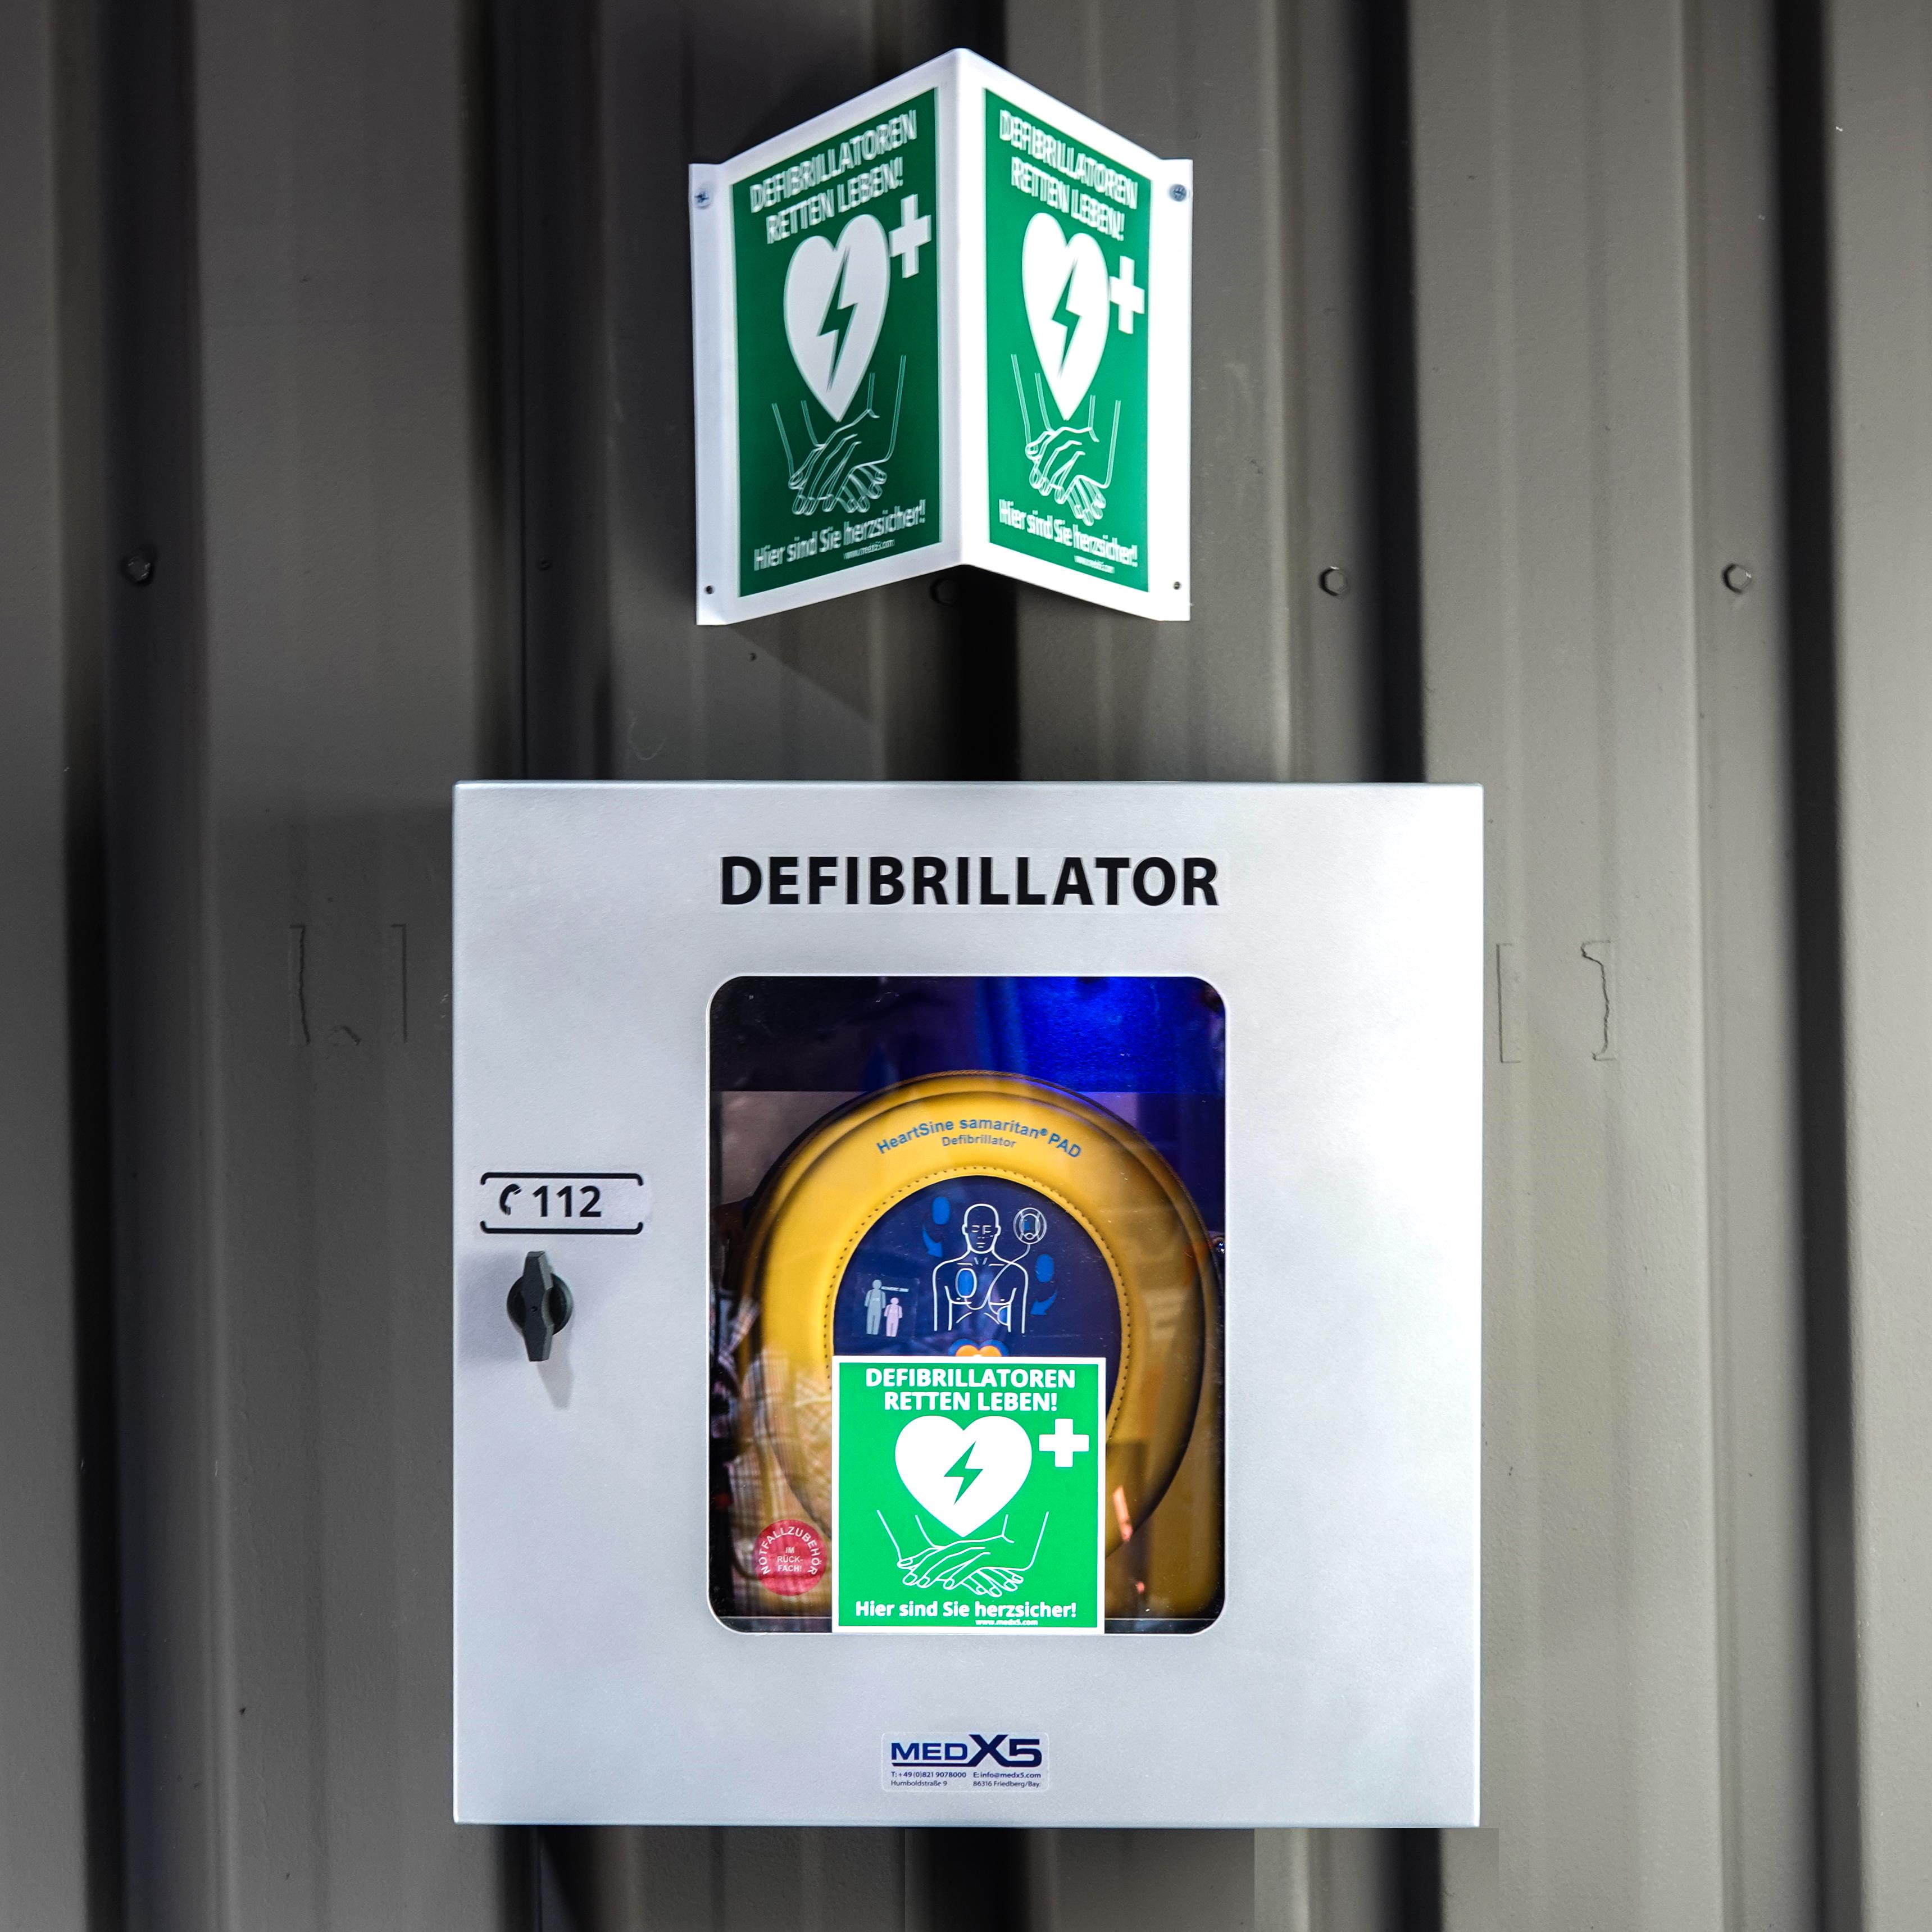 Defibrillator AED Außen-Wandkasten klimatisiert, mit Alarmen, beleuchtet, Universalgröße, S